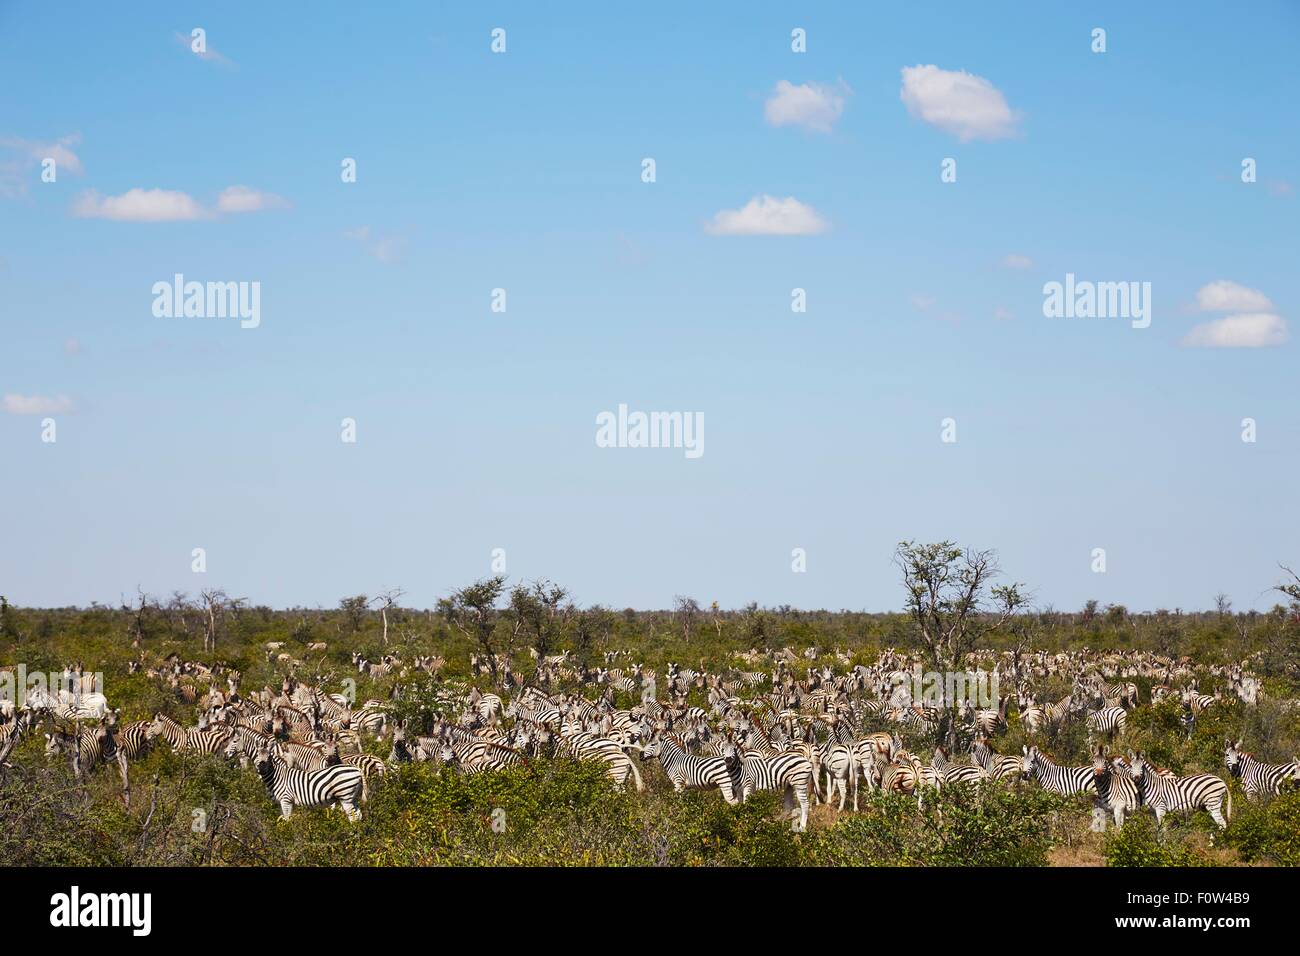 Herd of zebras, Nxai Pan National Park, Kalahari Desert, Africa Stock Photo